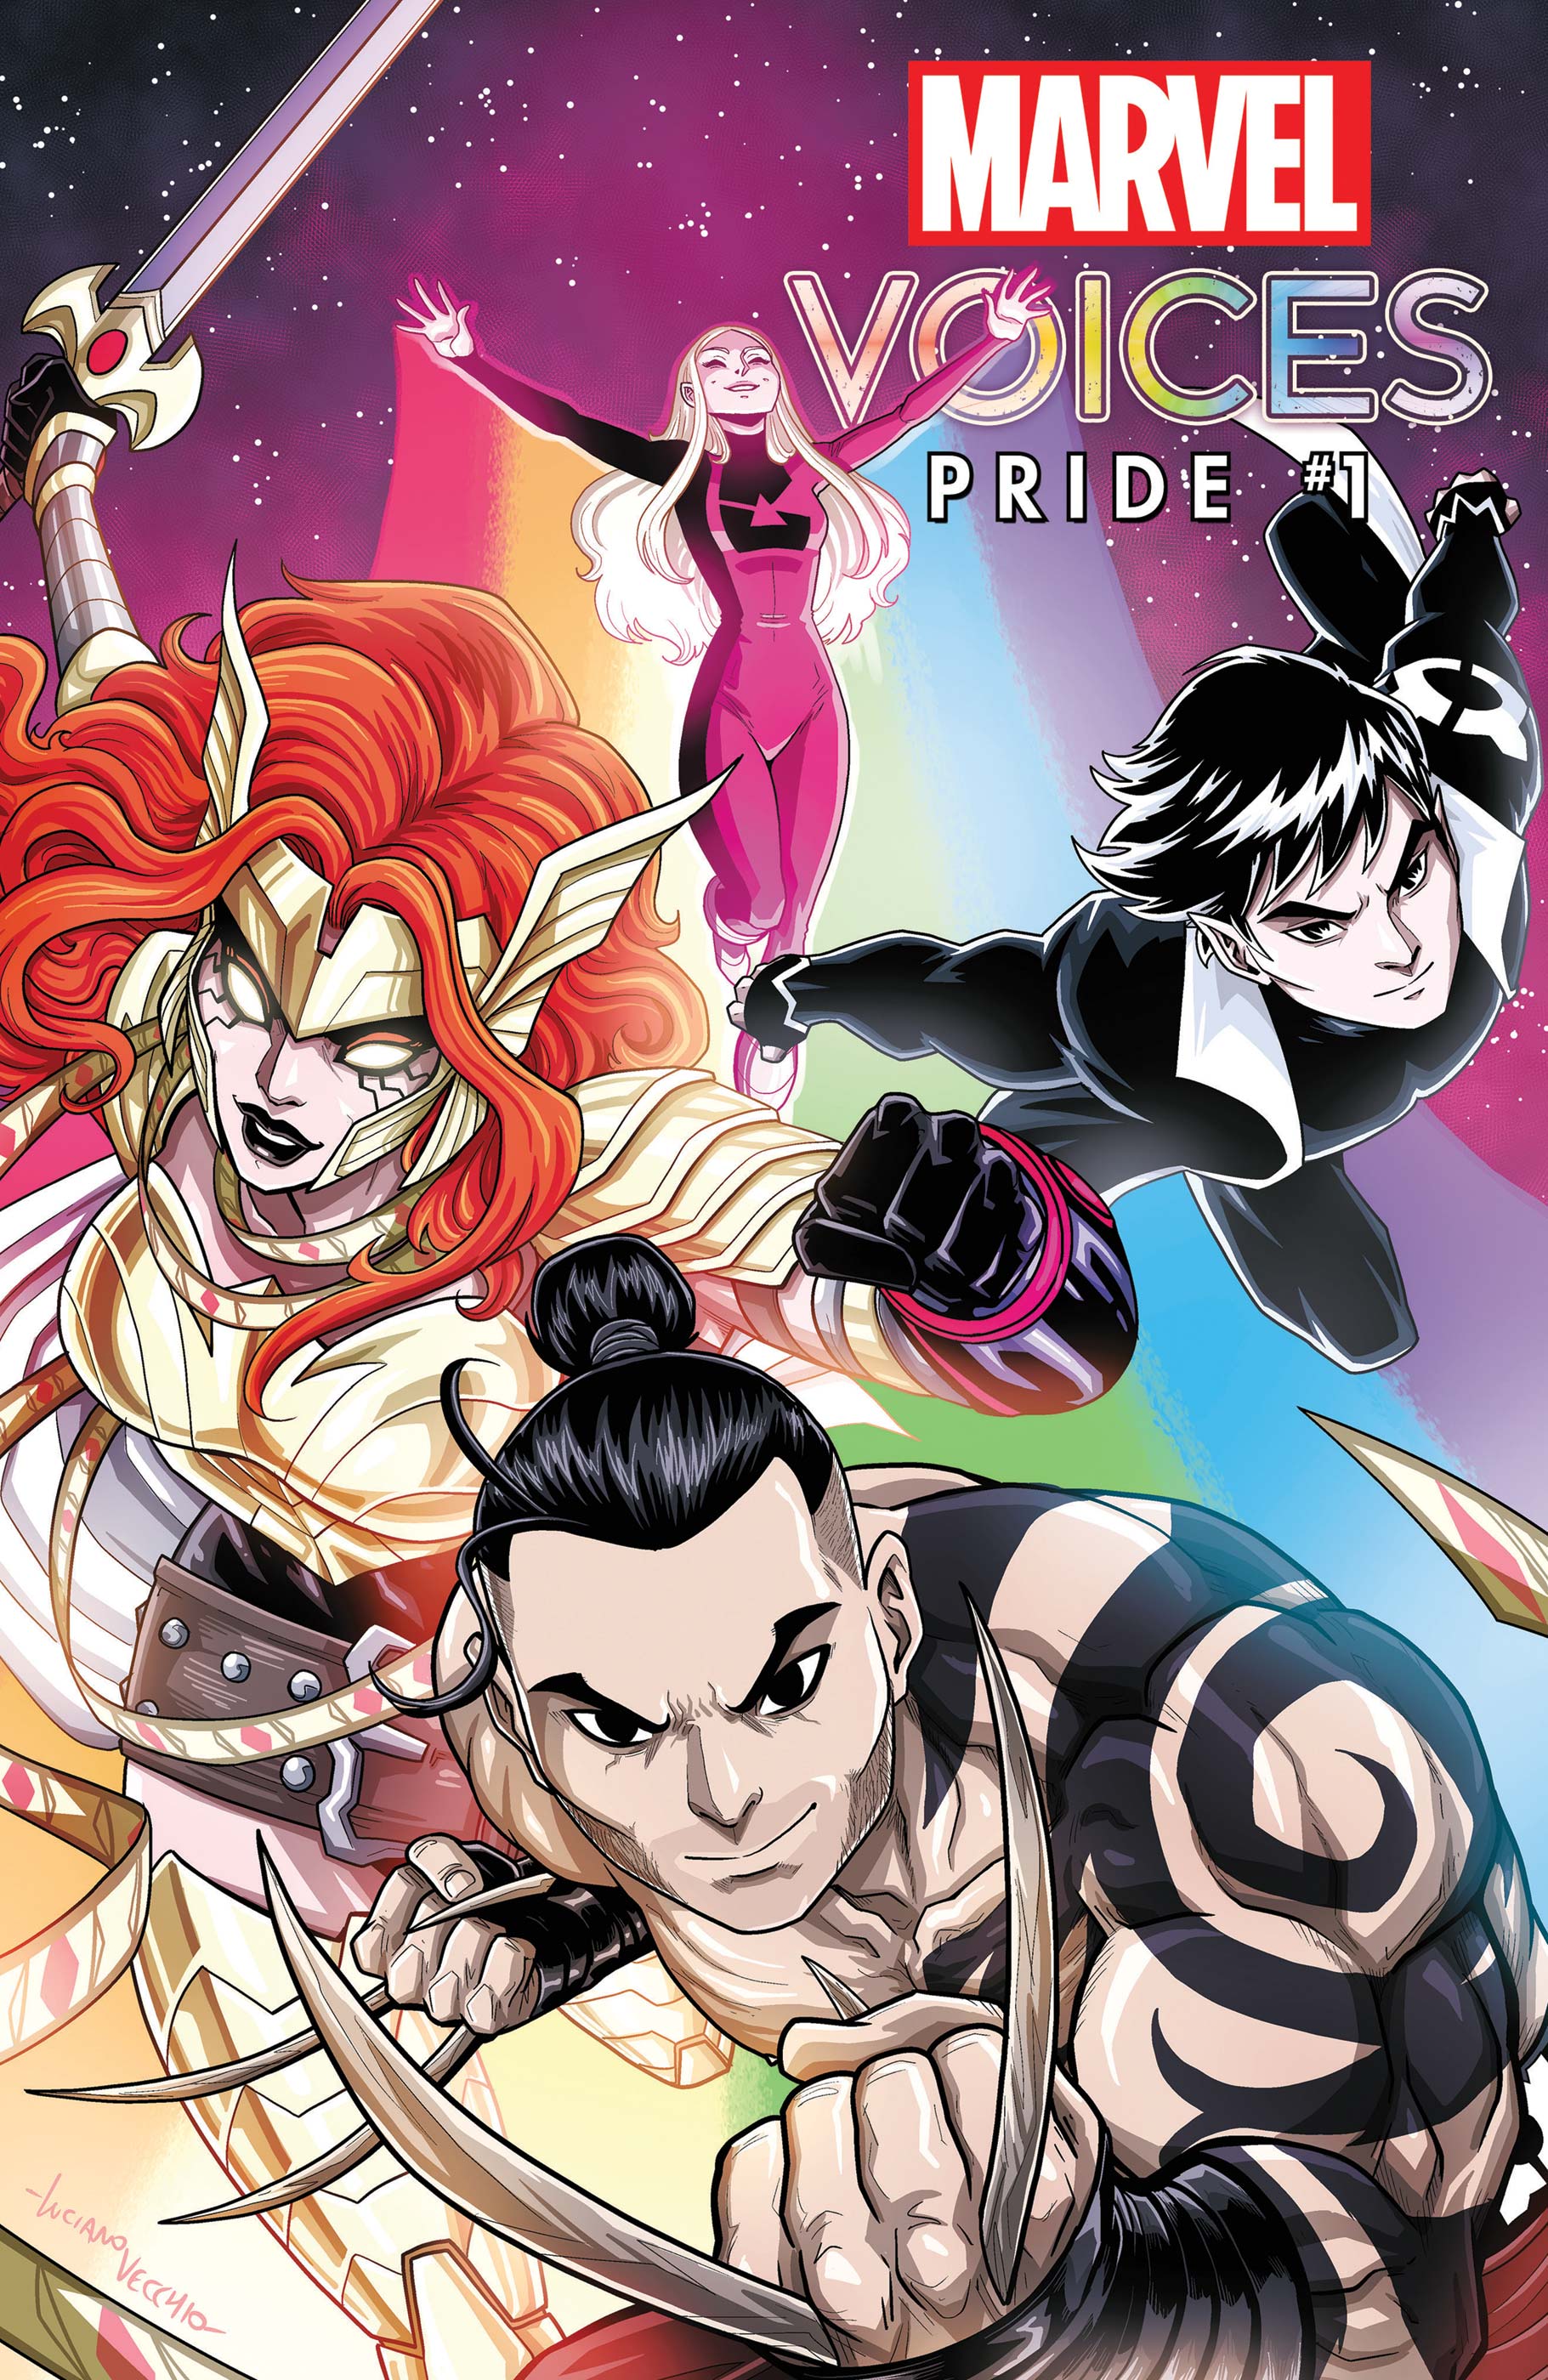 Marvel's Voices: Pride (2021) #1